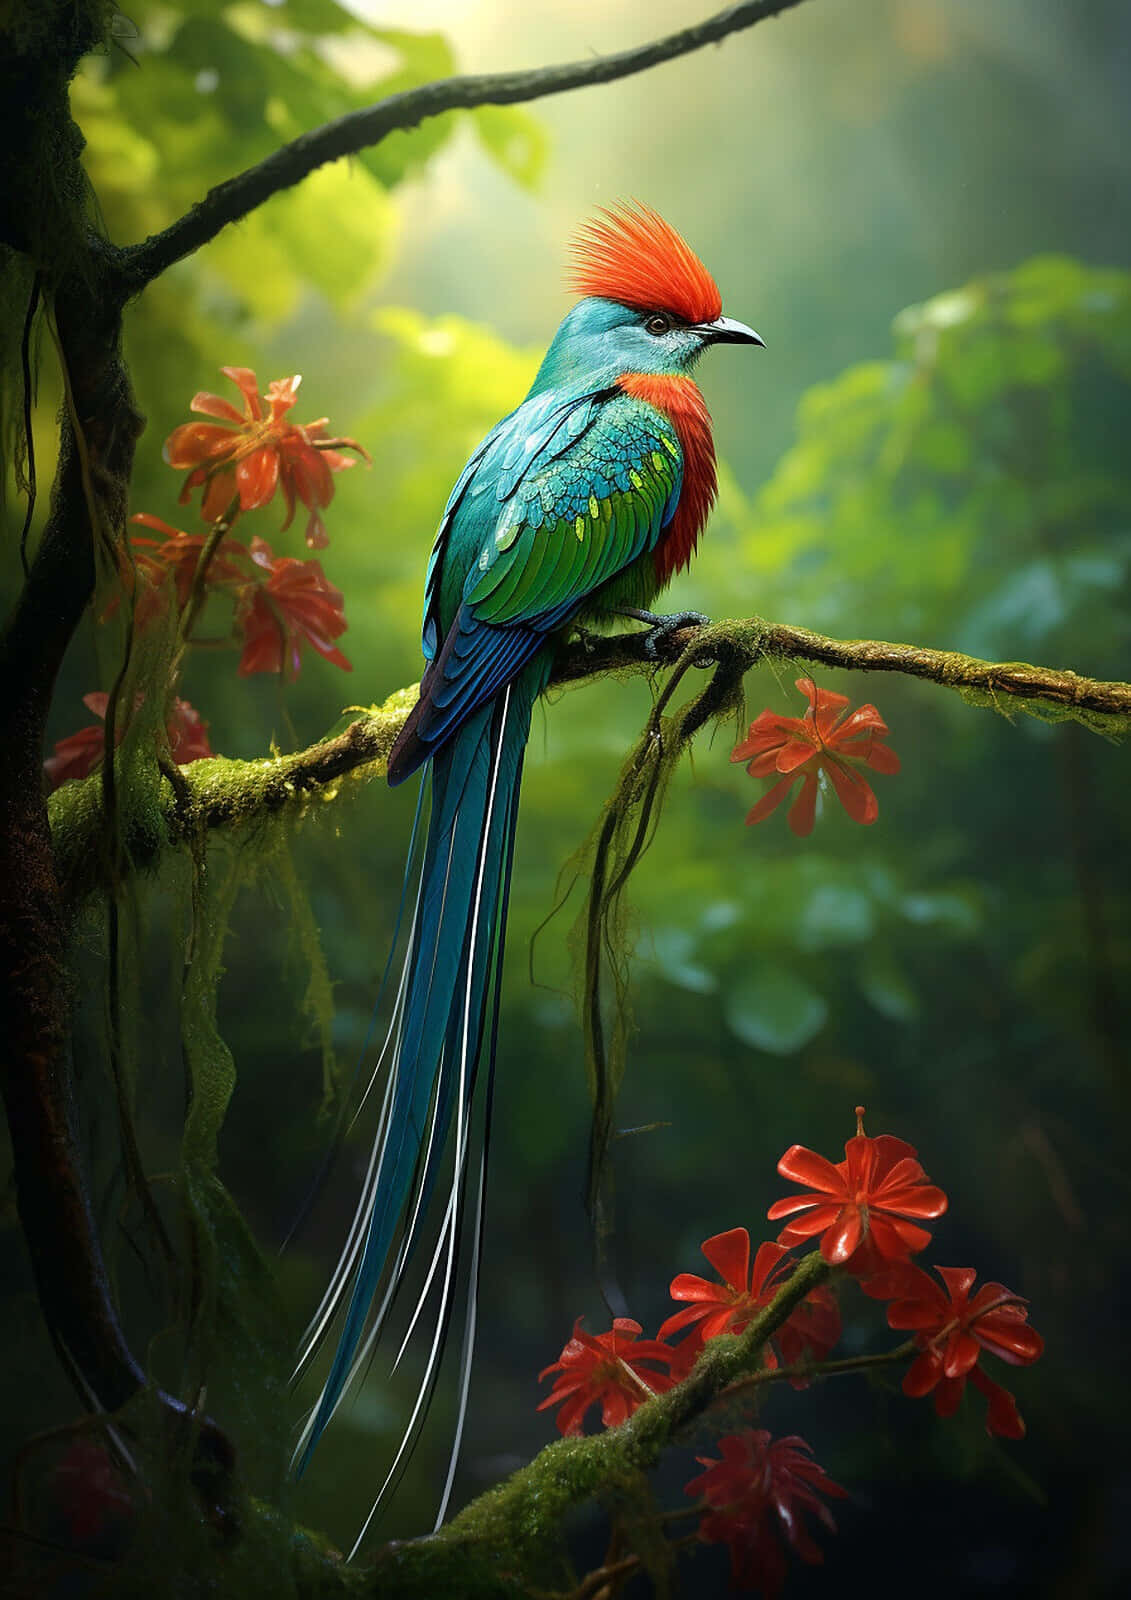 Vibrant Quetzalin Misty Forest.jpg Wallpaper